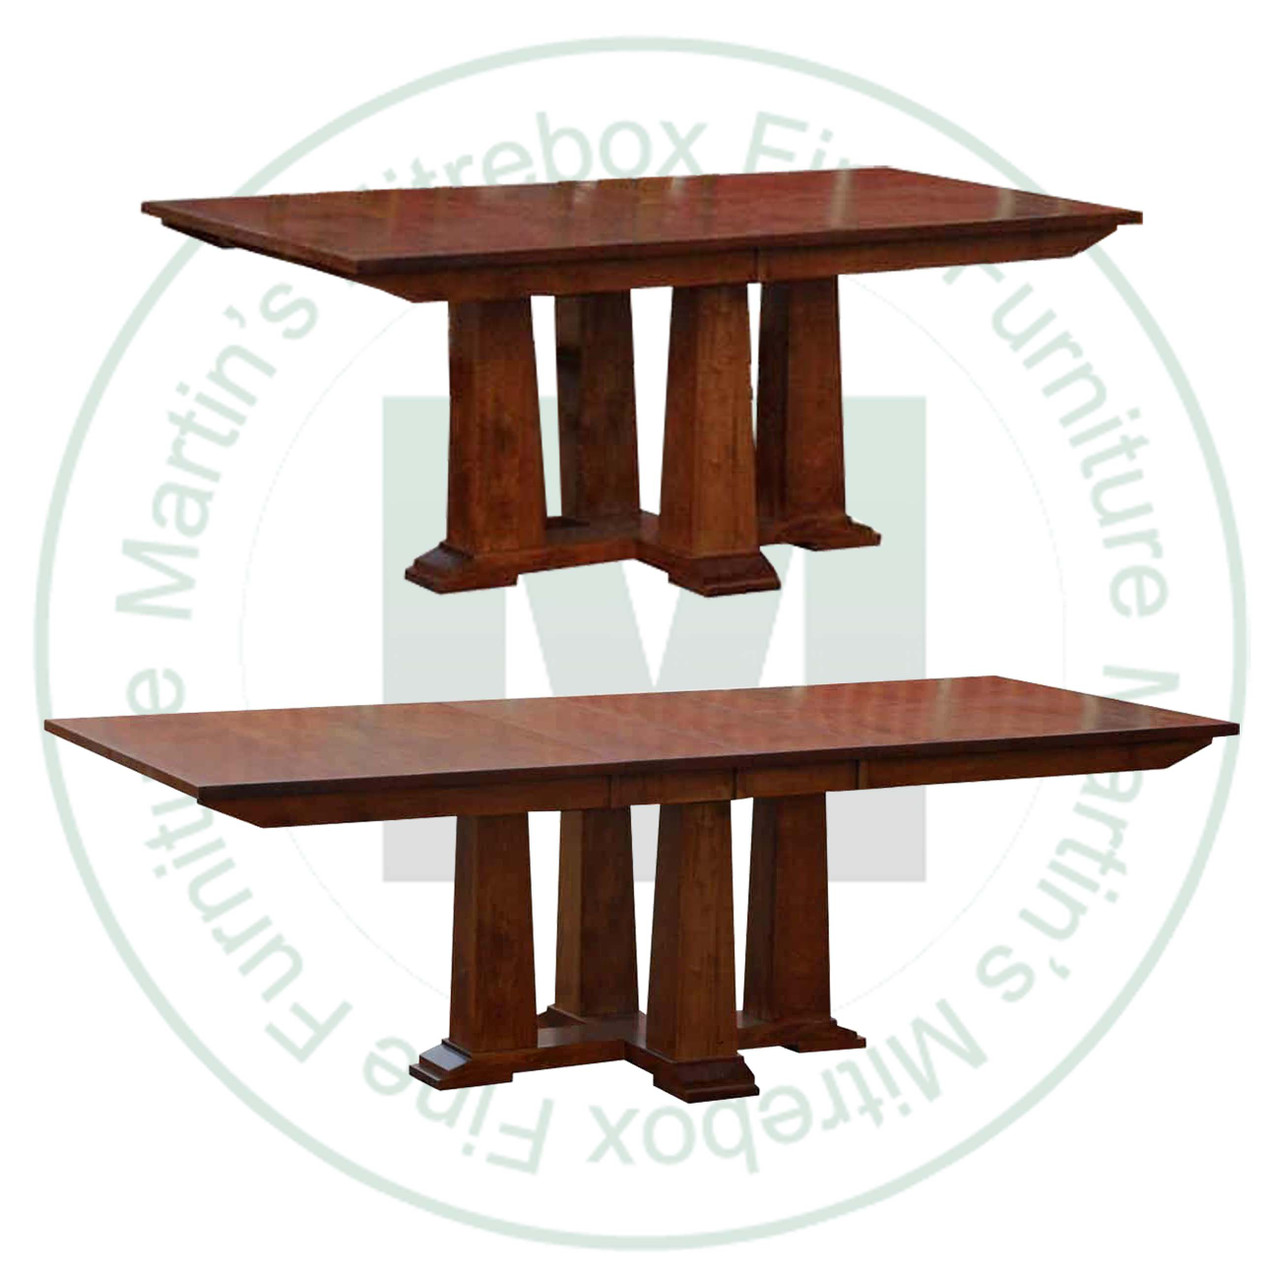 Pine Pallisade Center Extension Pedestal Table 48''D x 96''W x 30''H